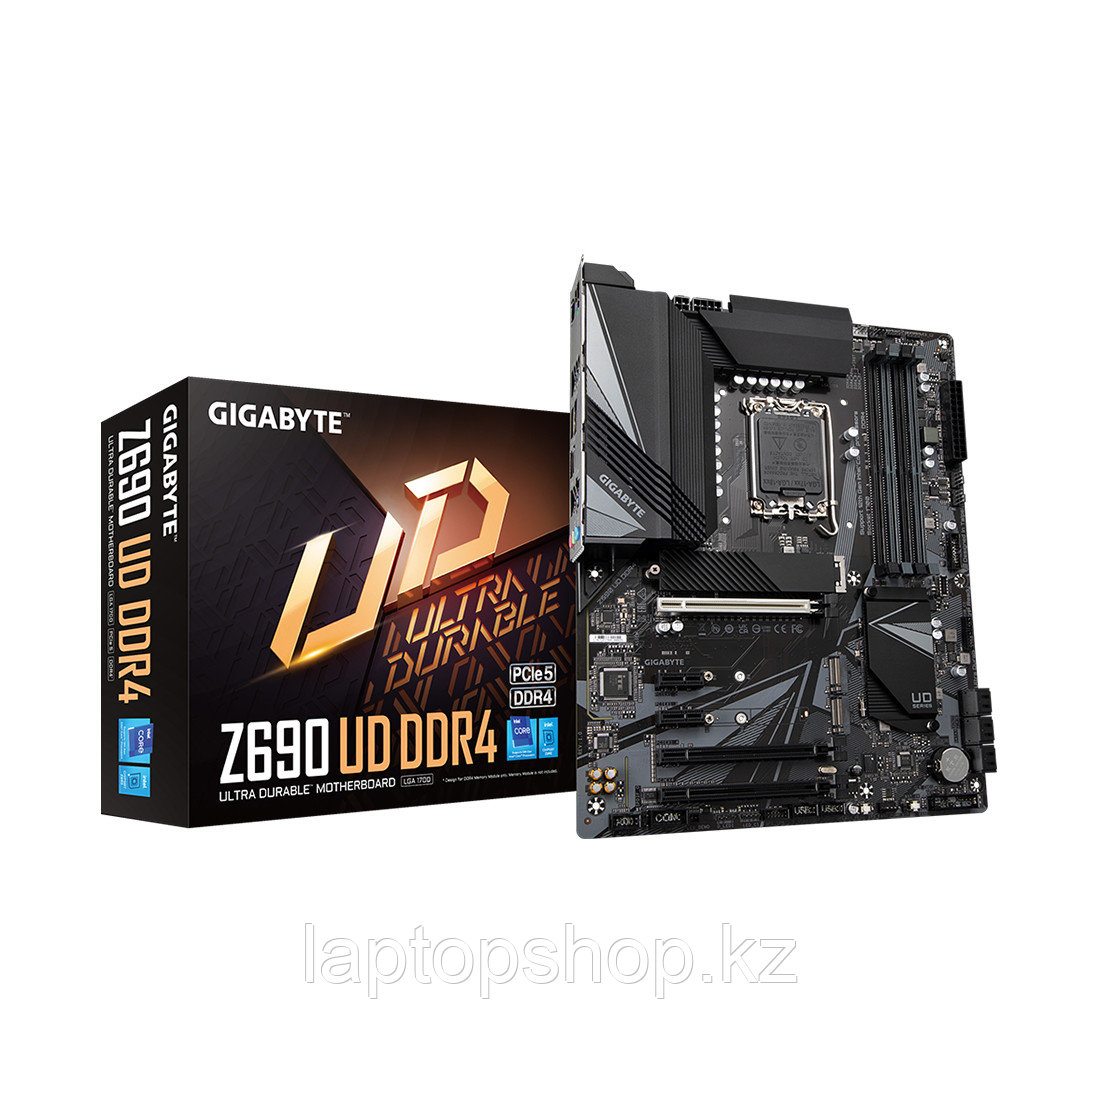 Системная плата Gigabyte Z690 UD DDR4, фото 1